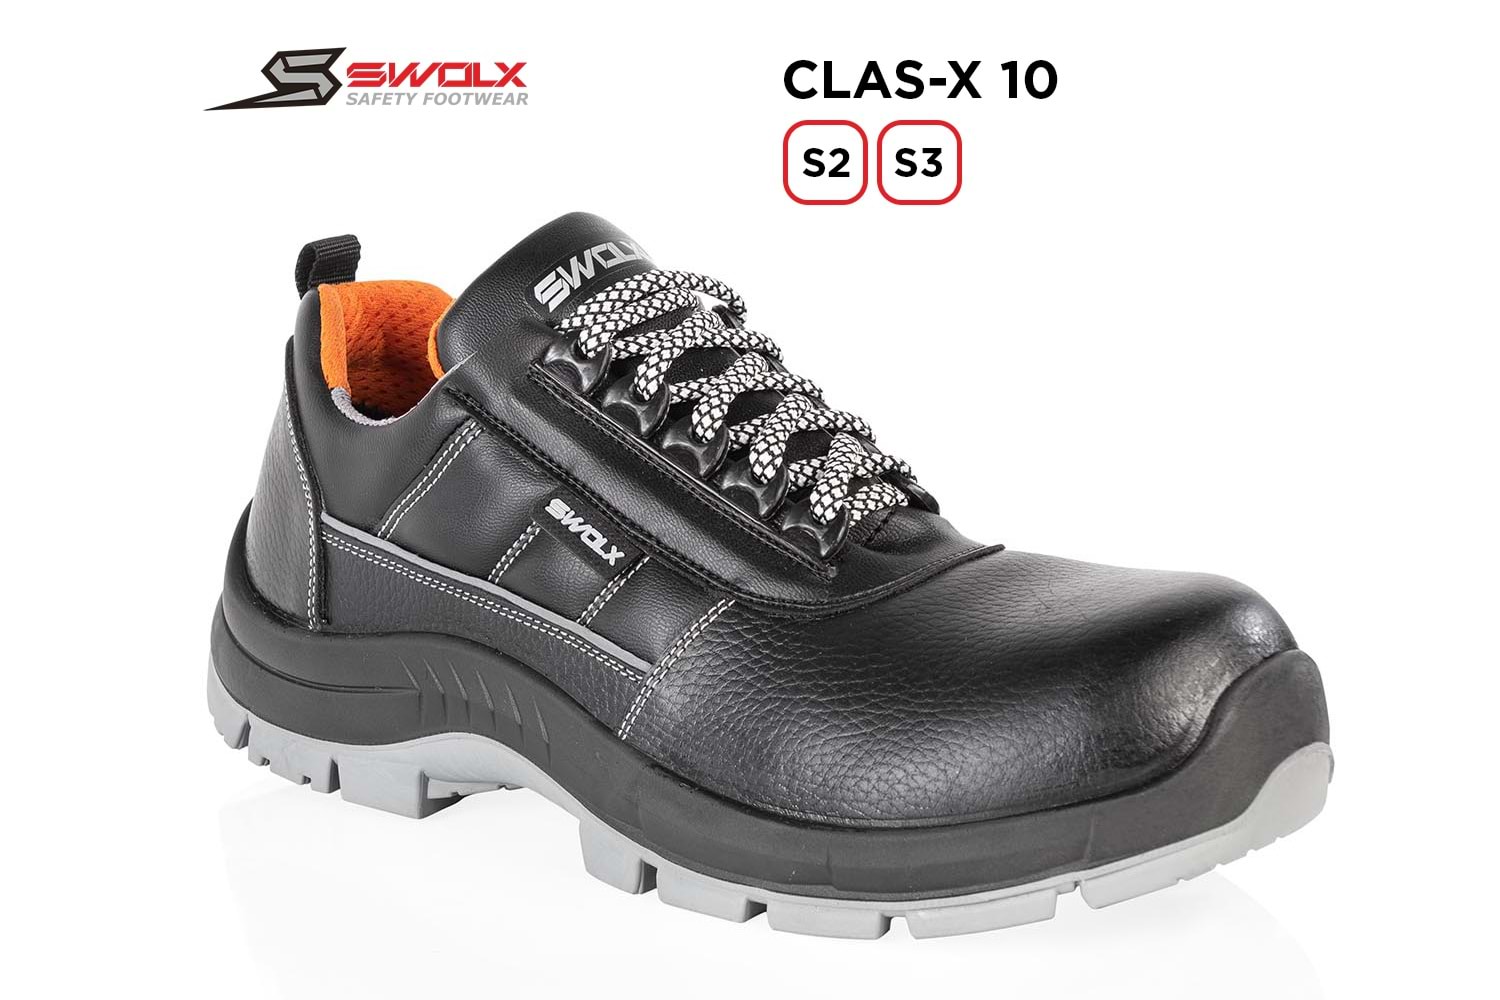 Swolx İş Ayakkabısı - Clas-X 10 S2 - 38